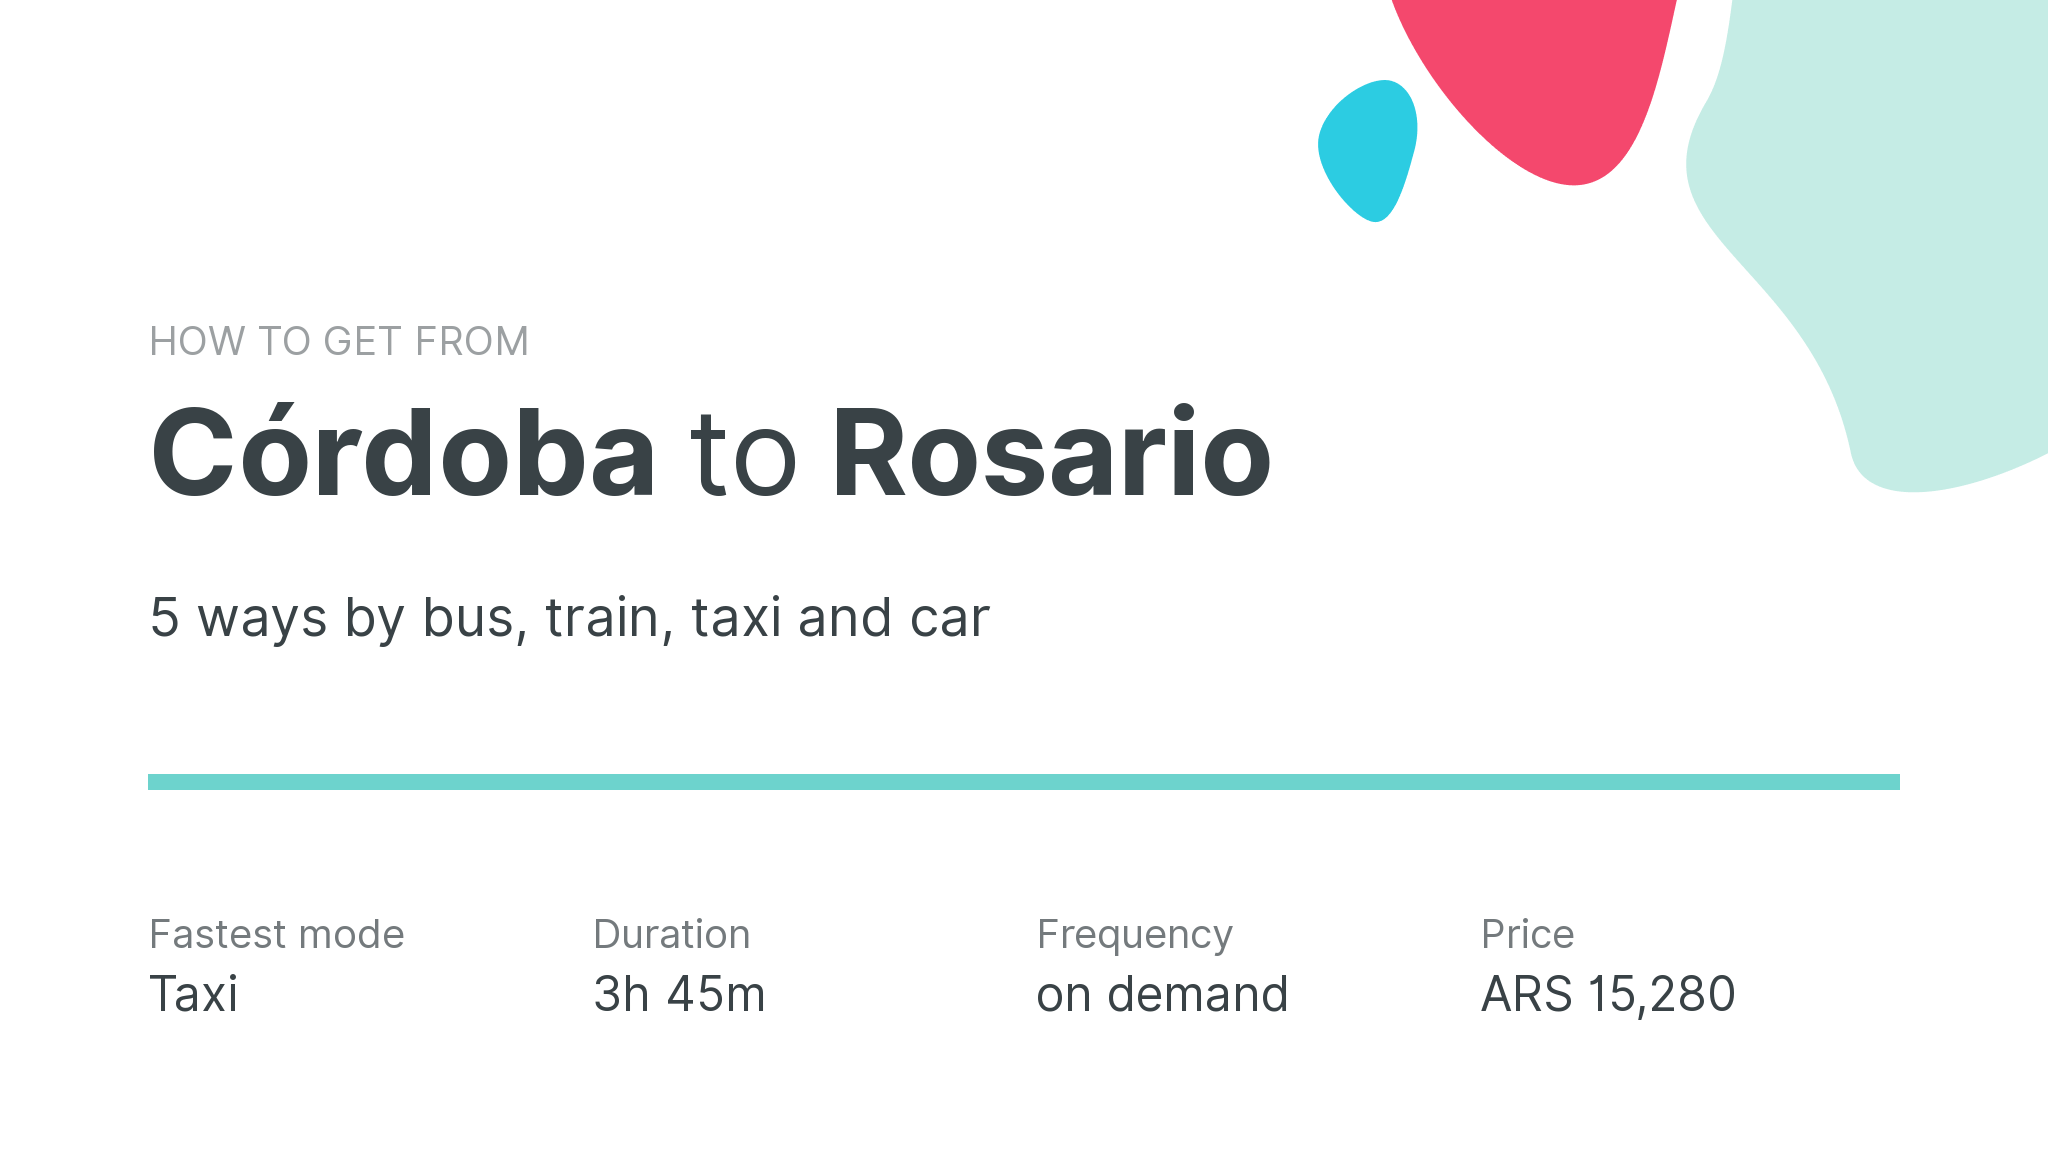 How do I get from Córdoba to Rosario